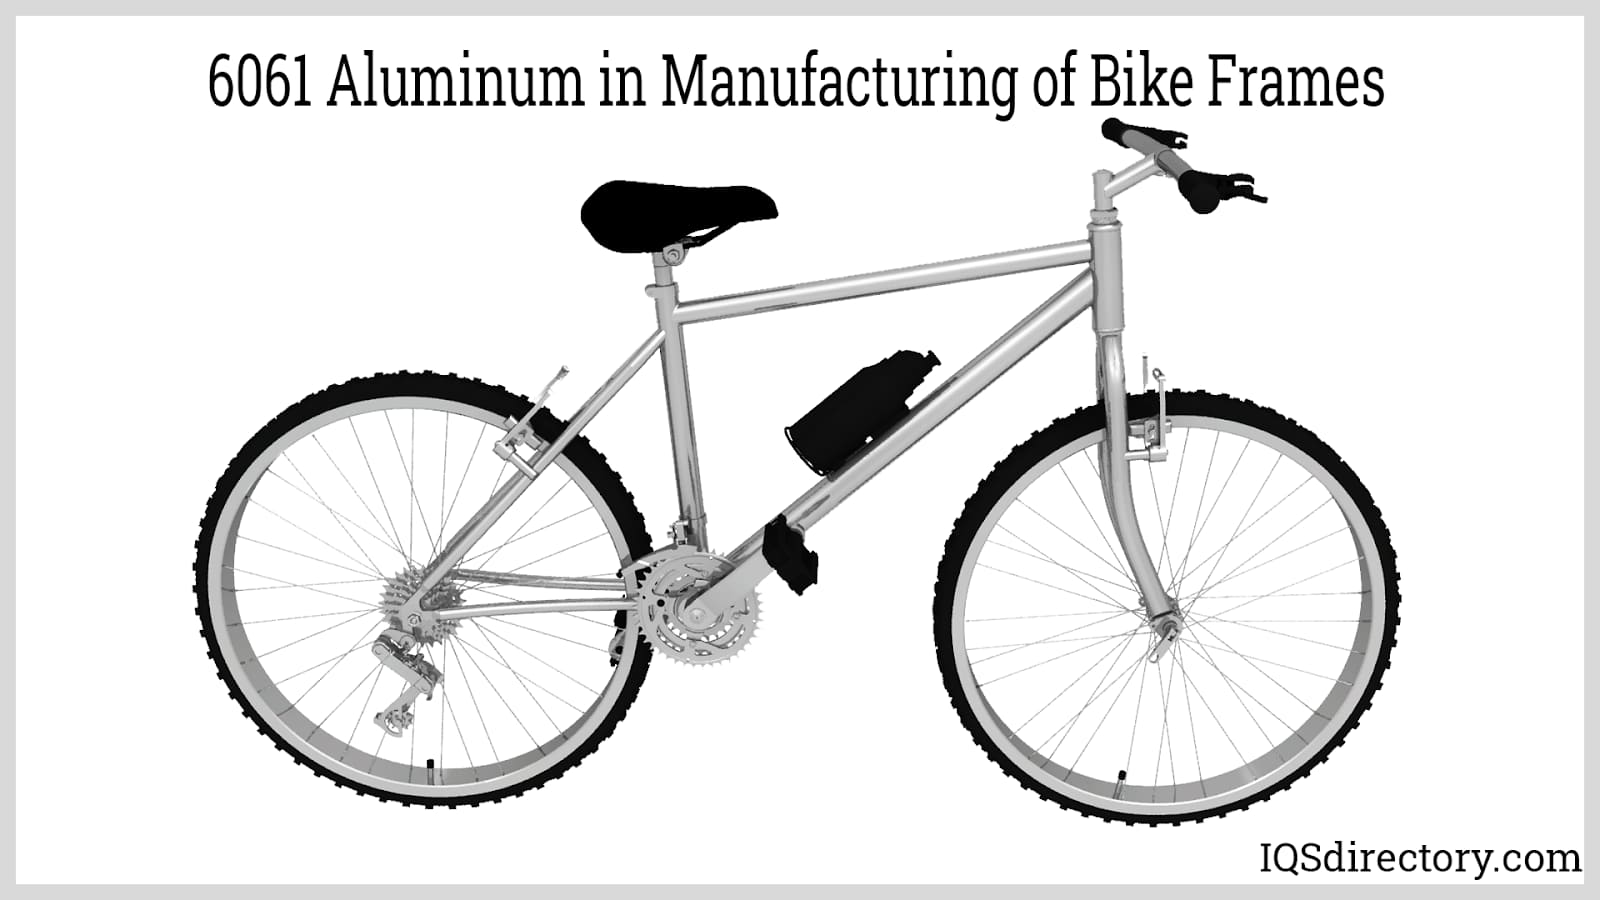 6061 Aluminum in Manufacturing of Bike Frames